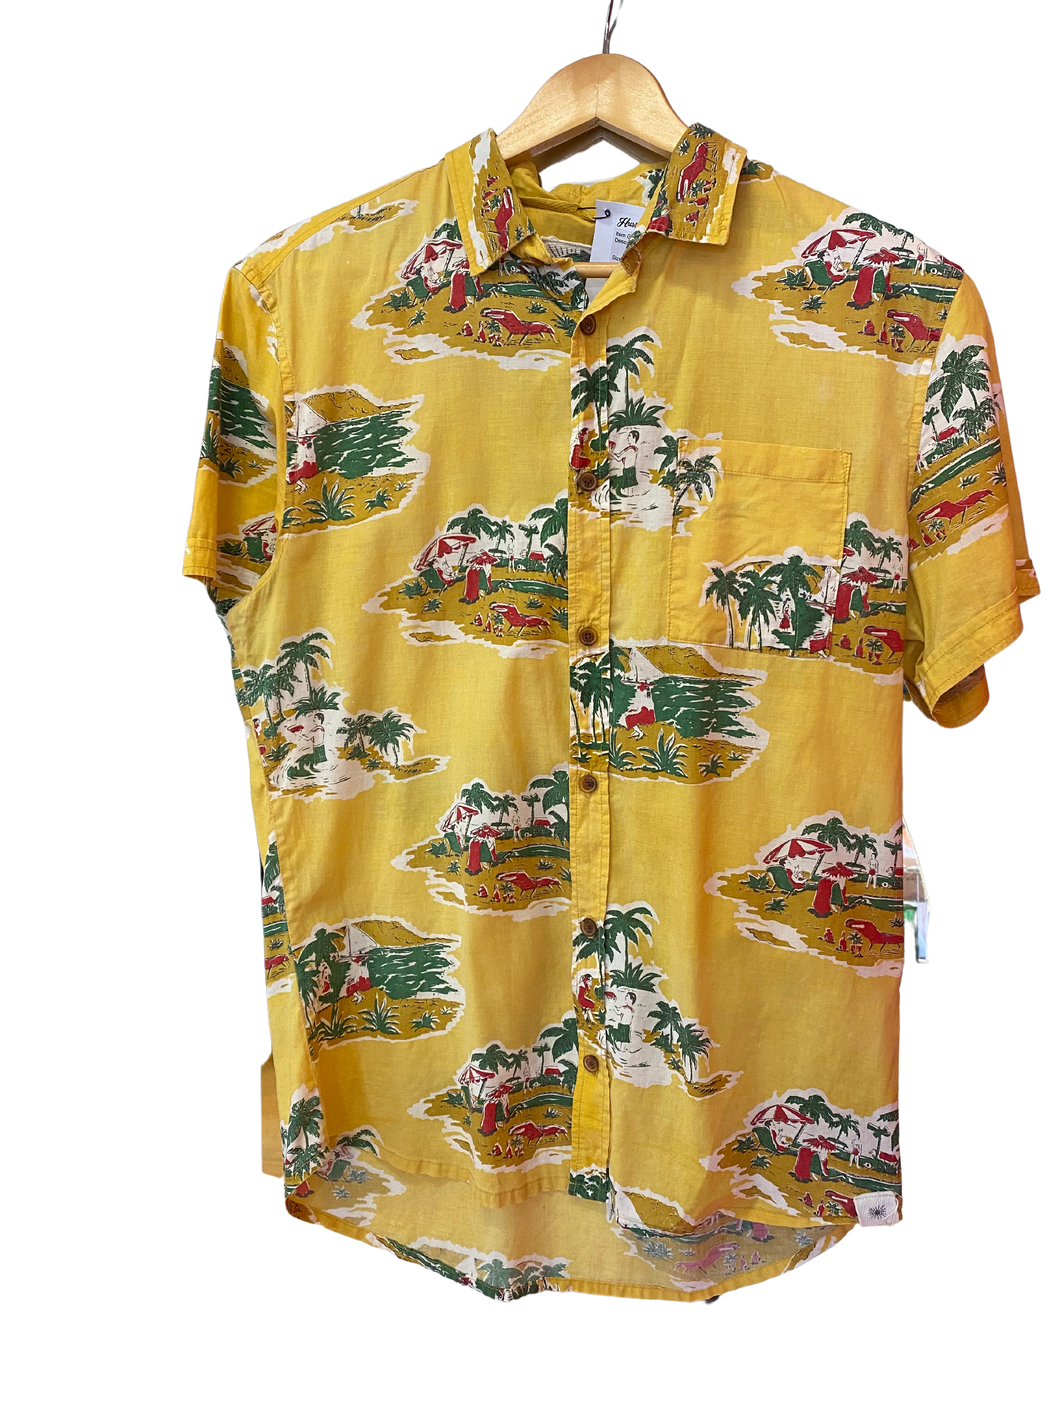 Yellow Hawaiian shirt